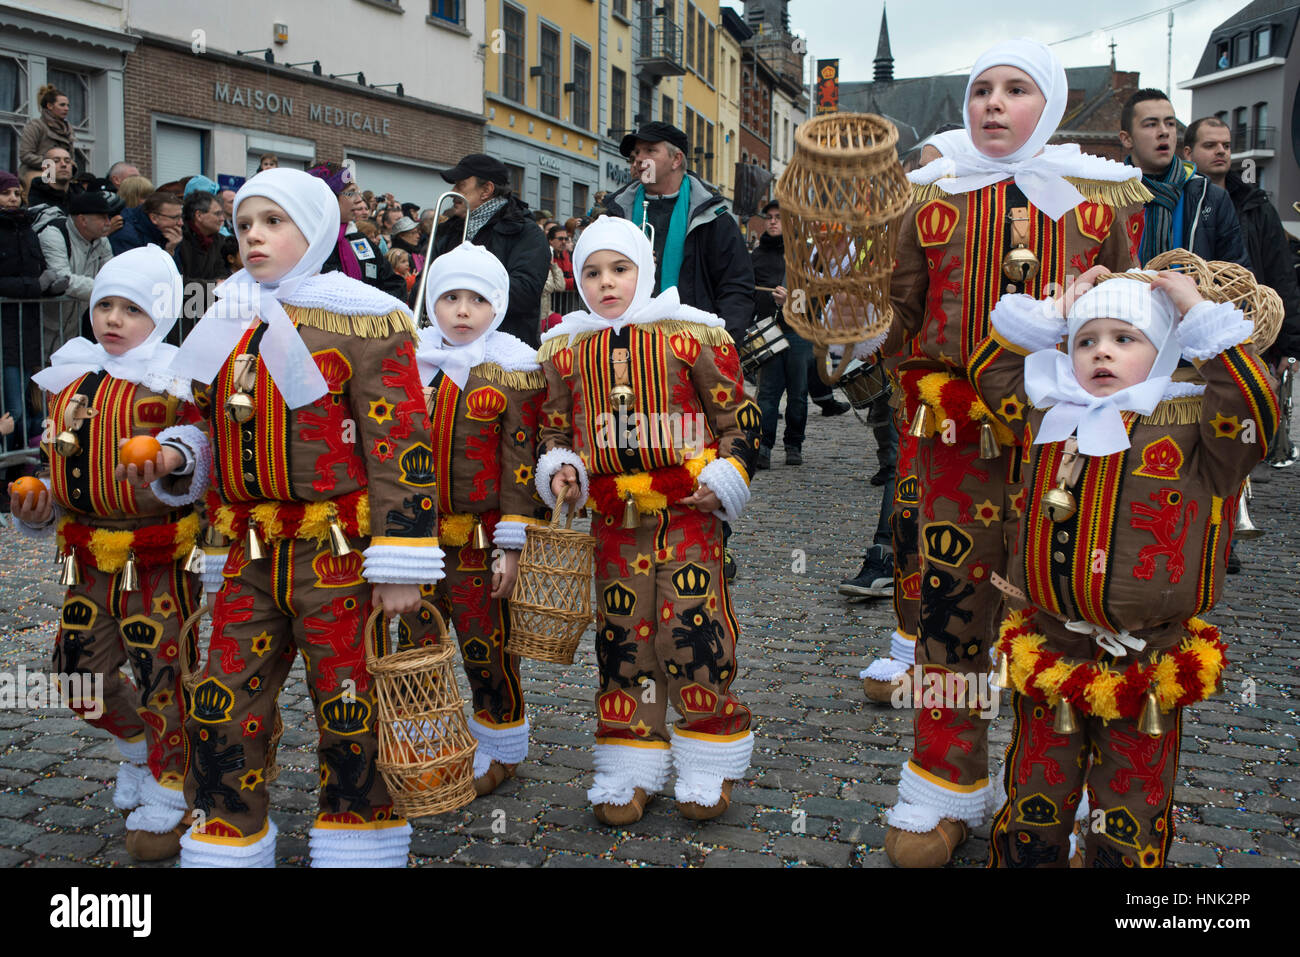 La Belgique, le carnaval de Binche. unesco world heritage festival parade. Belgique, commune française, province de Hainaut, village de Binche. l'carniva Banque D'Images